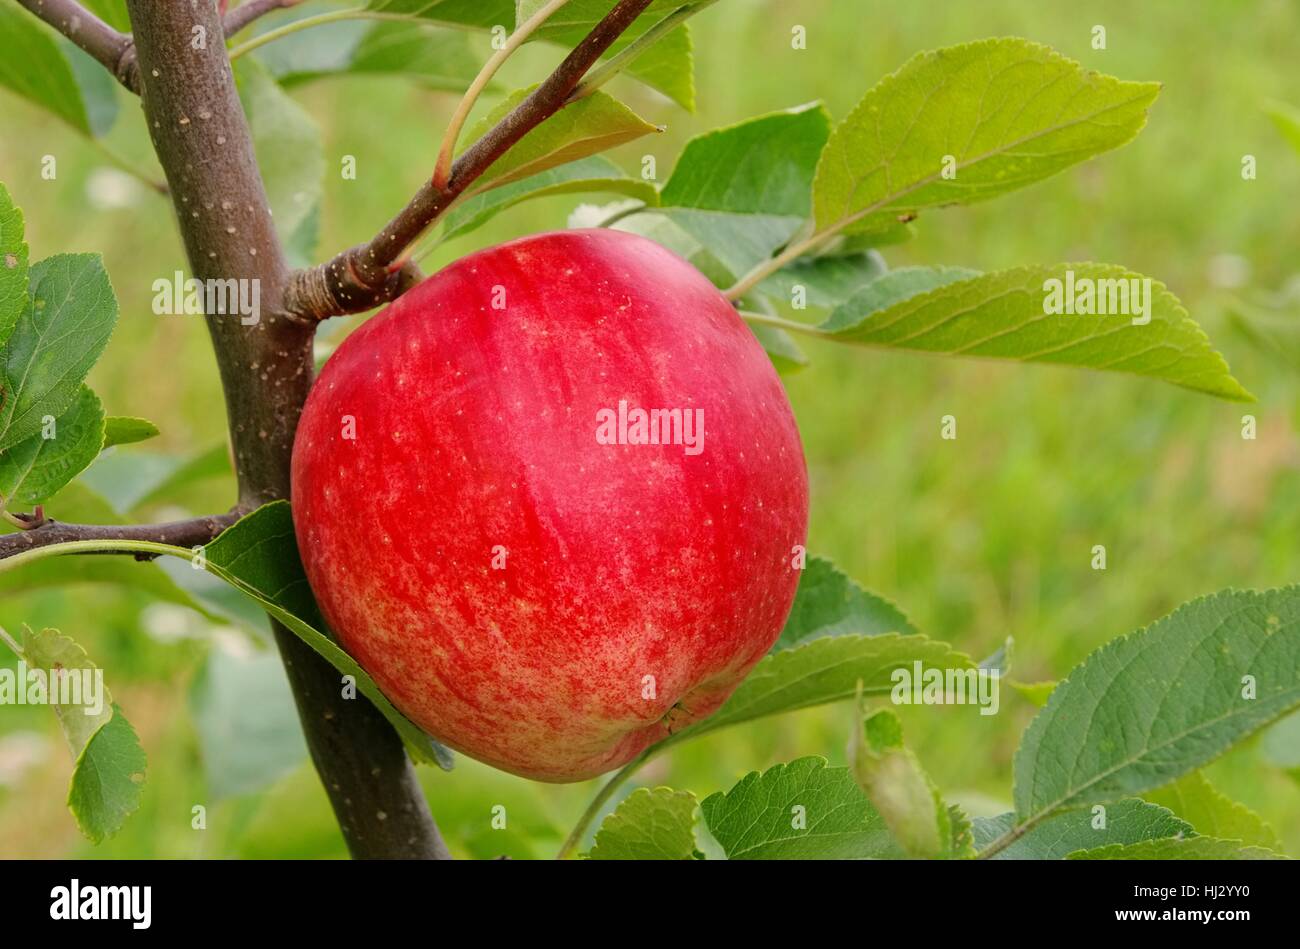 Apfel auf dem Baum - Apfel am Baum 146 Stockfoto